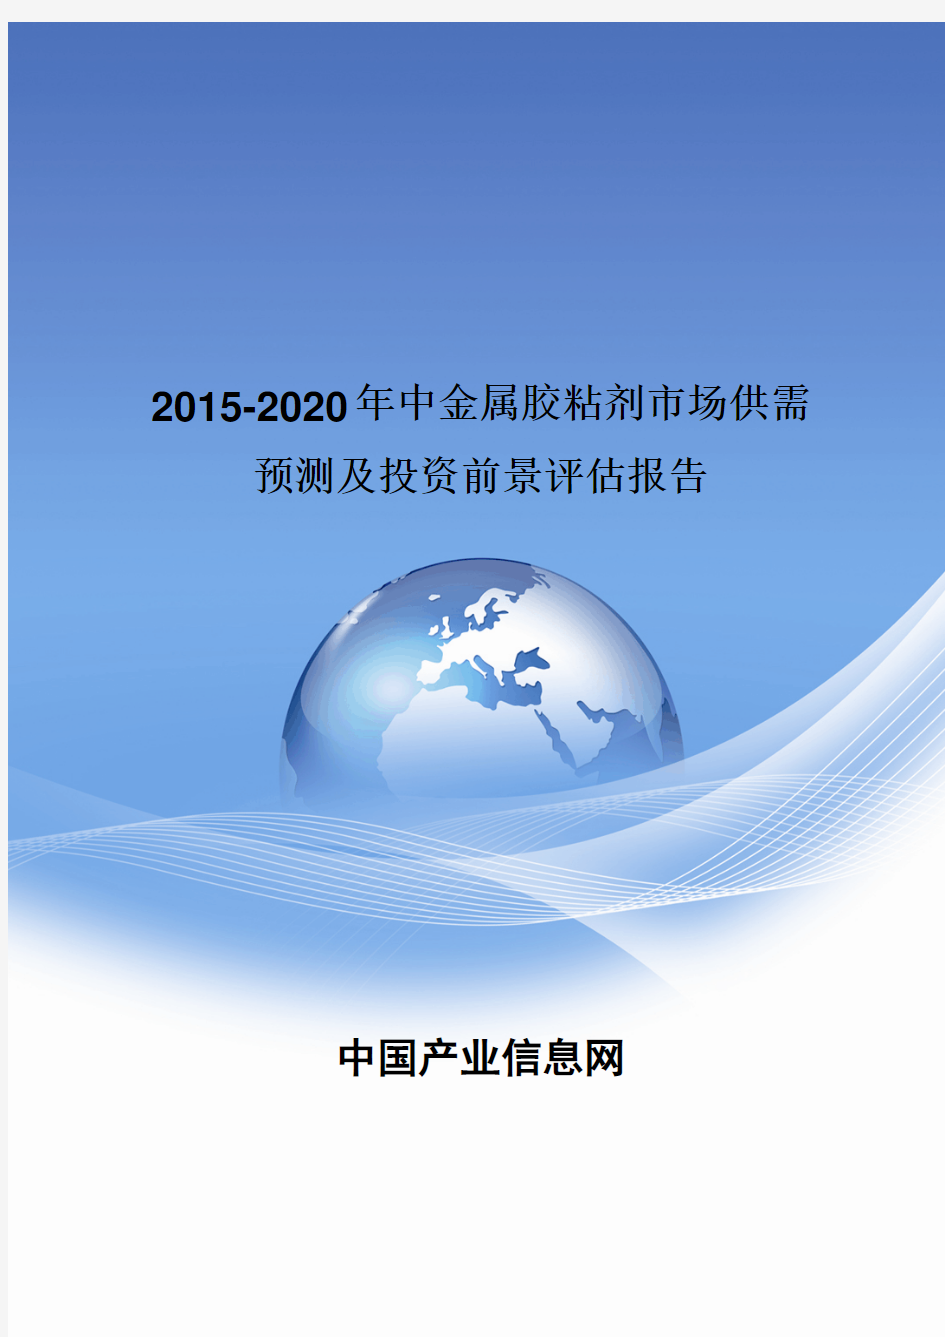 2015-2020年中国金属胶粘剂市场供需预测及投资前景评估报告